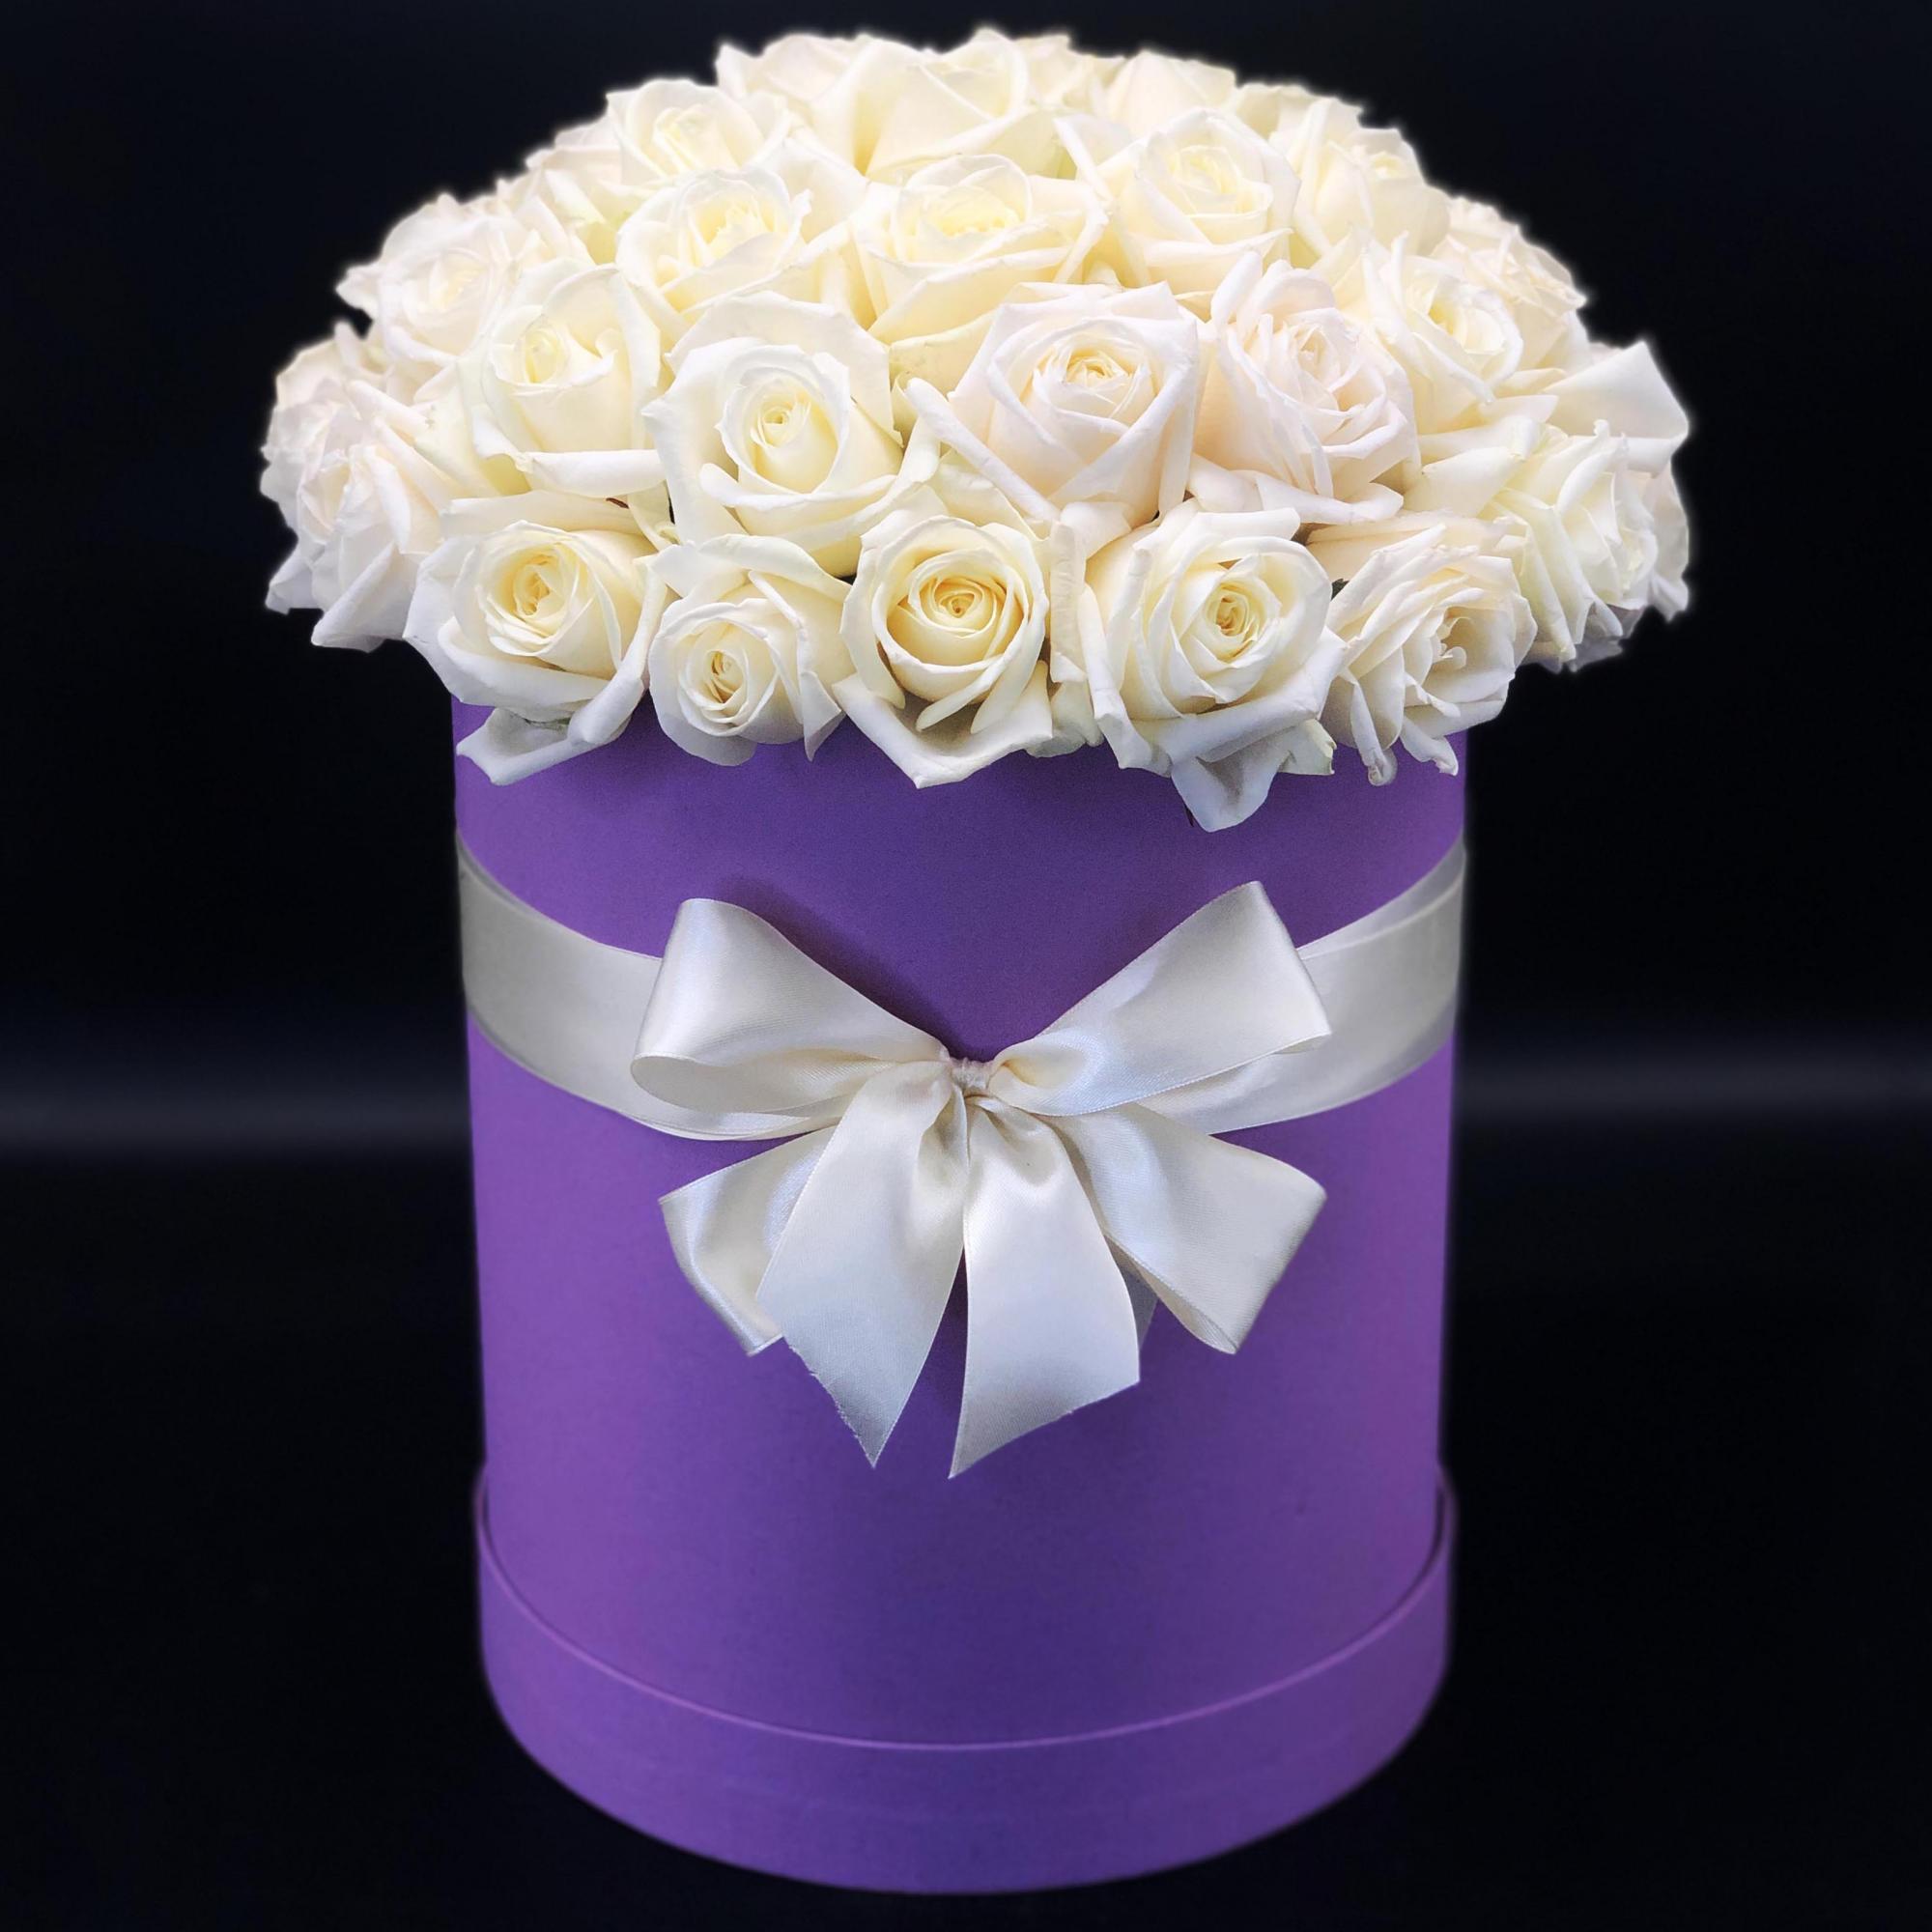  Kemer Flower Order 29 White Roses in a purple box 